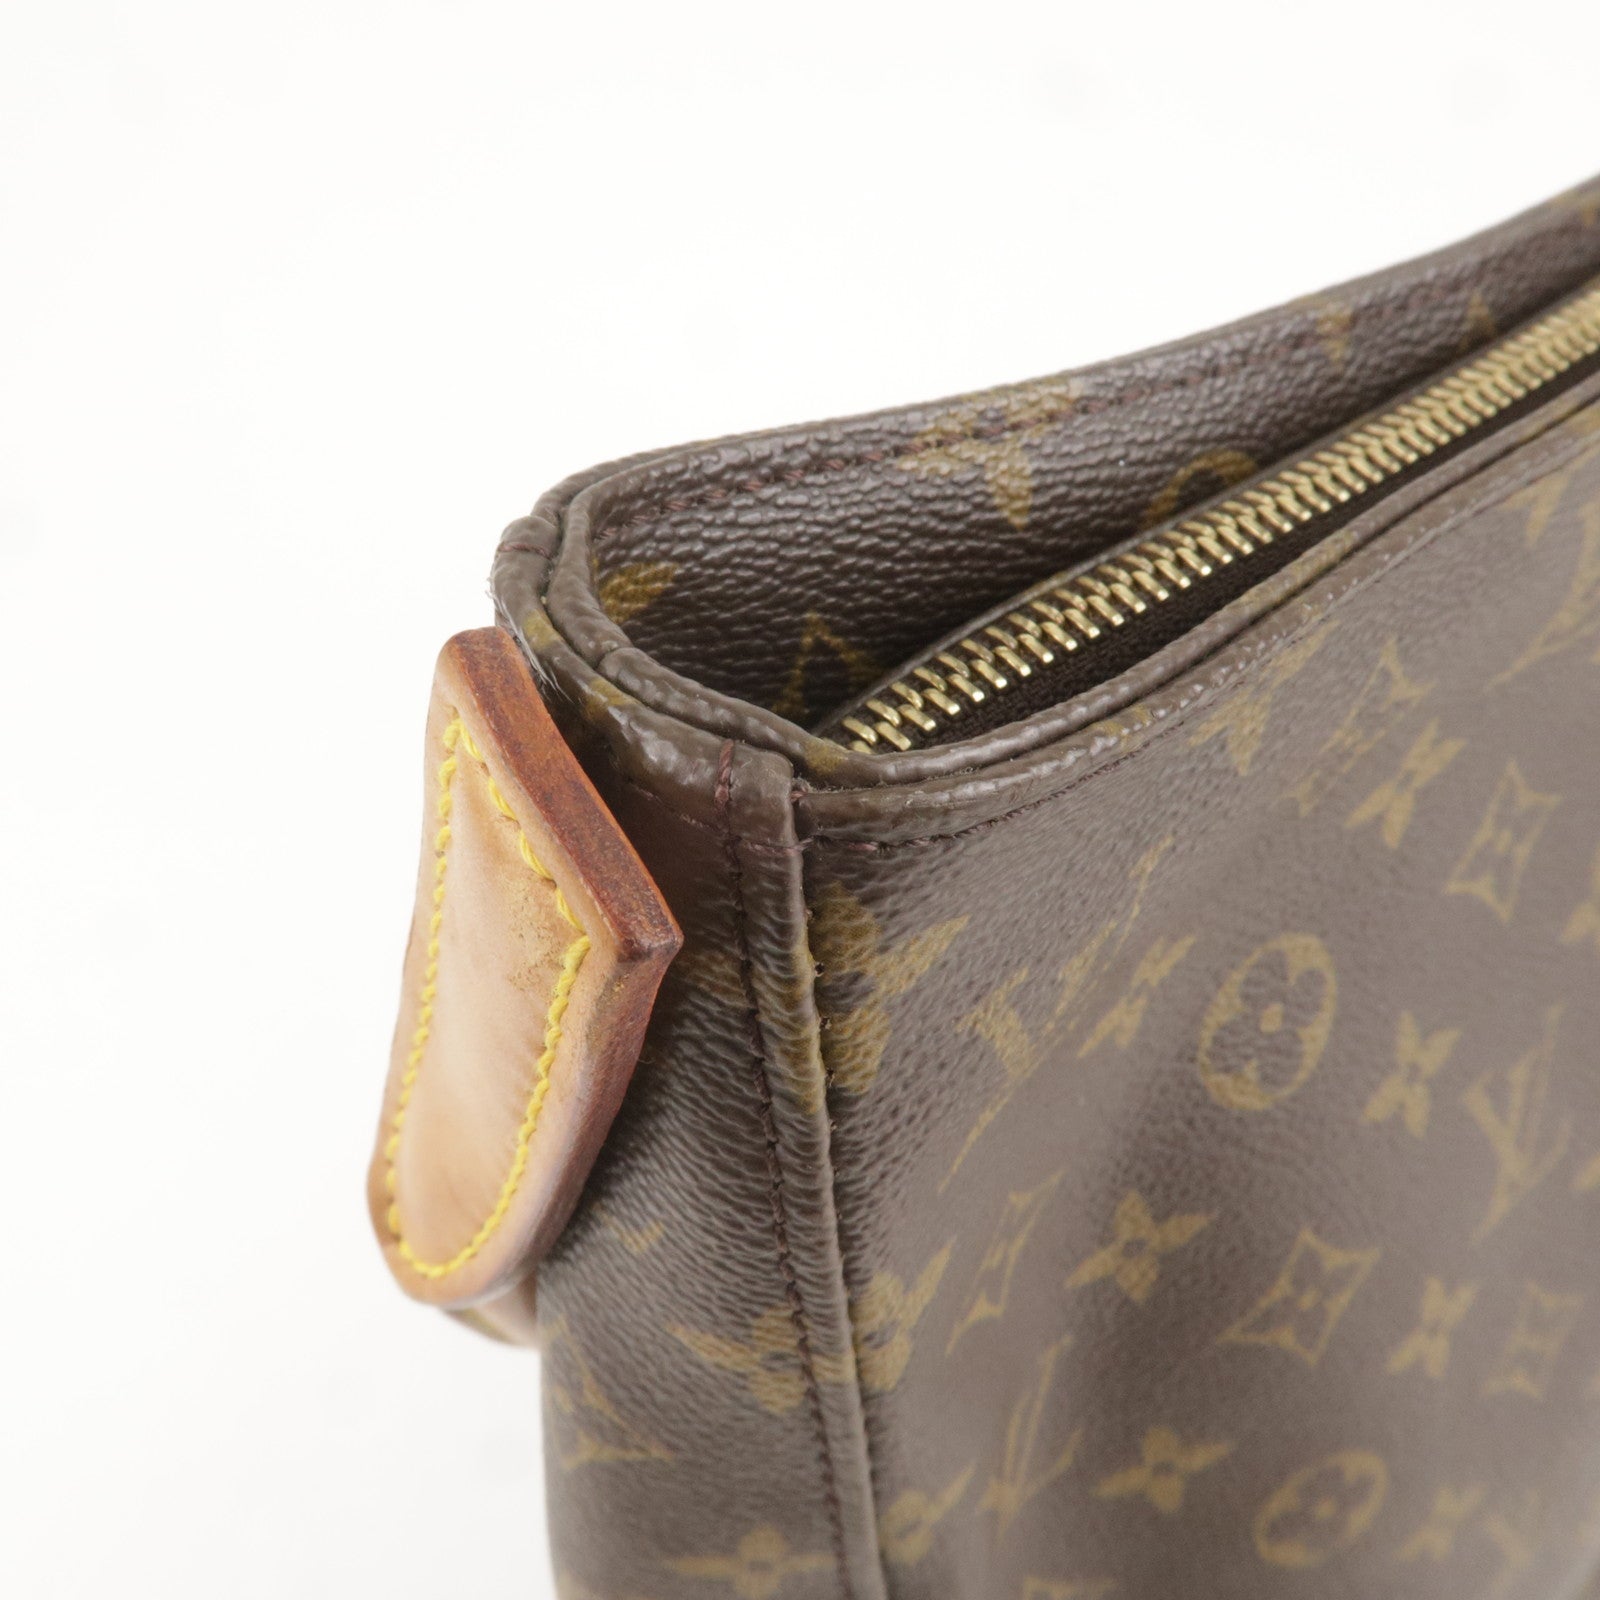 Pre-Owned Louis Vuitton Shoulder Bag Looping Brown Monogram M51145